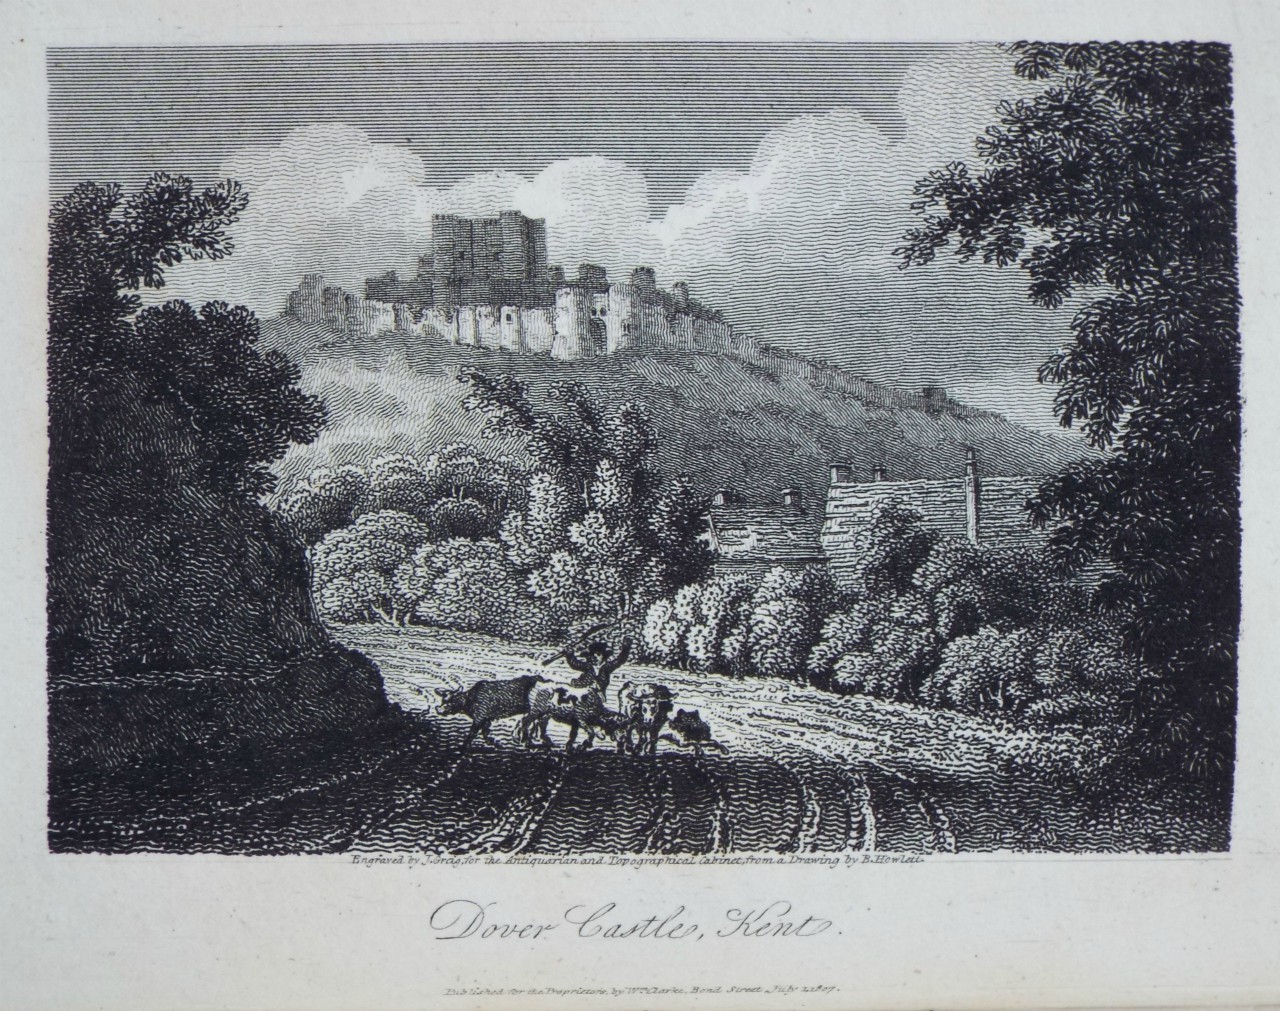 Print - Dover Castle, Kent. - Greig